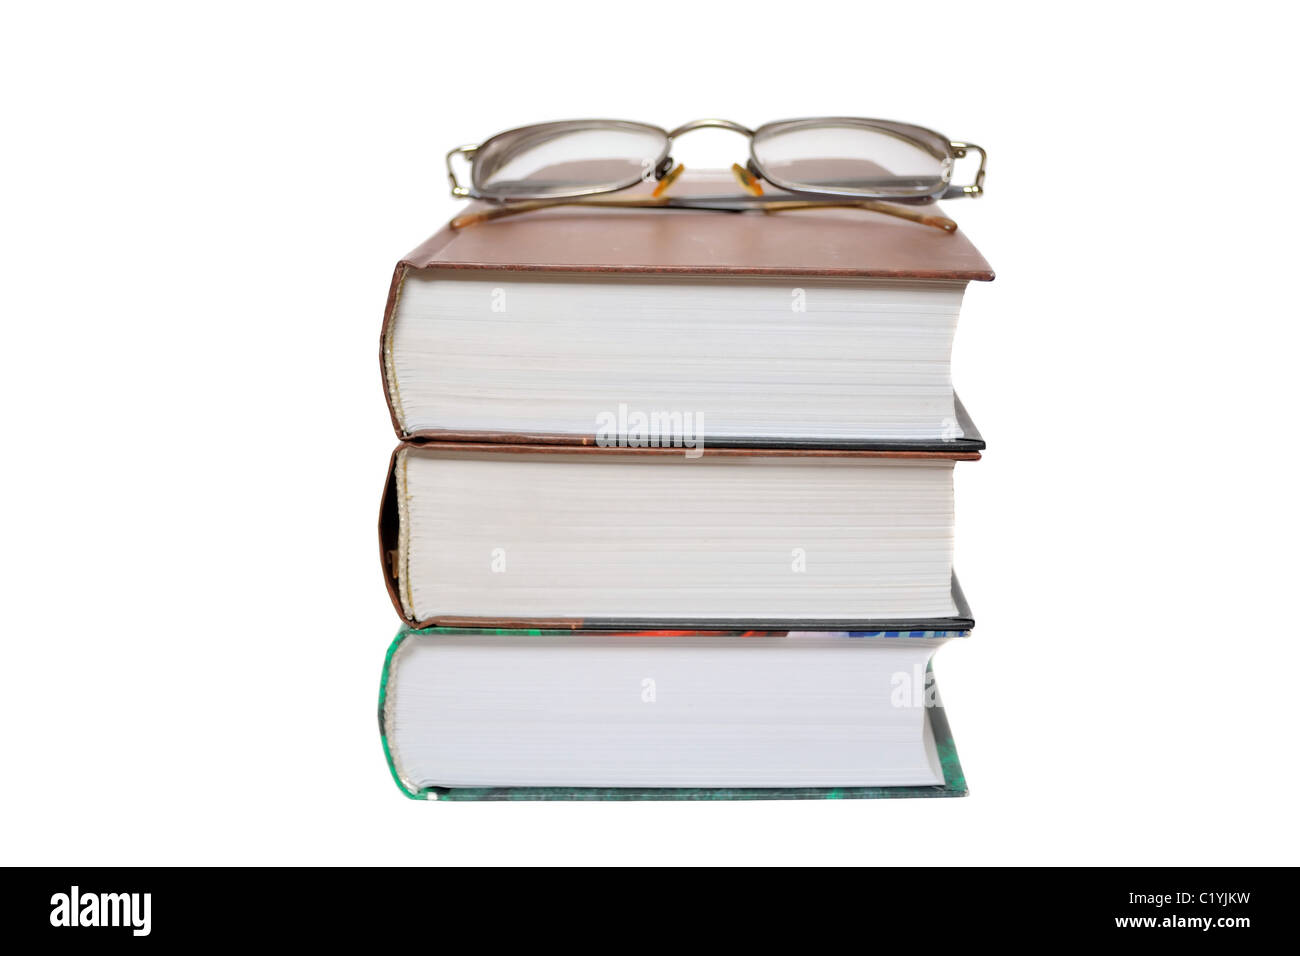 Les lunettes sur le books isolated on white Banque D'Images